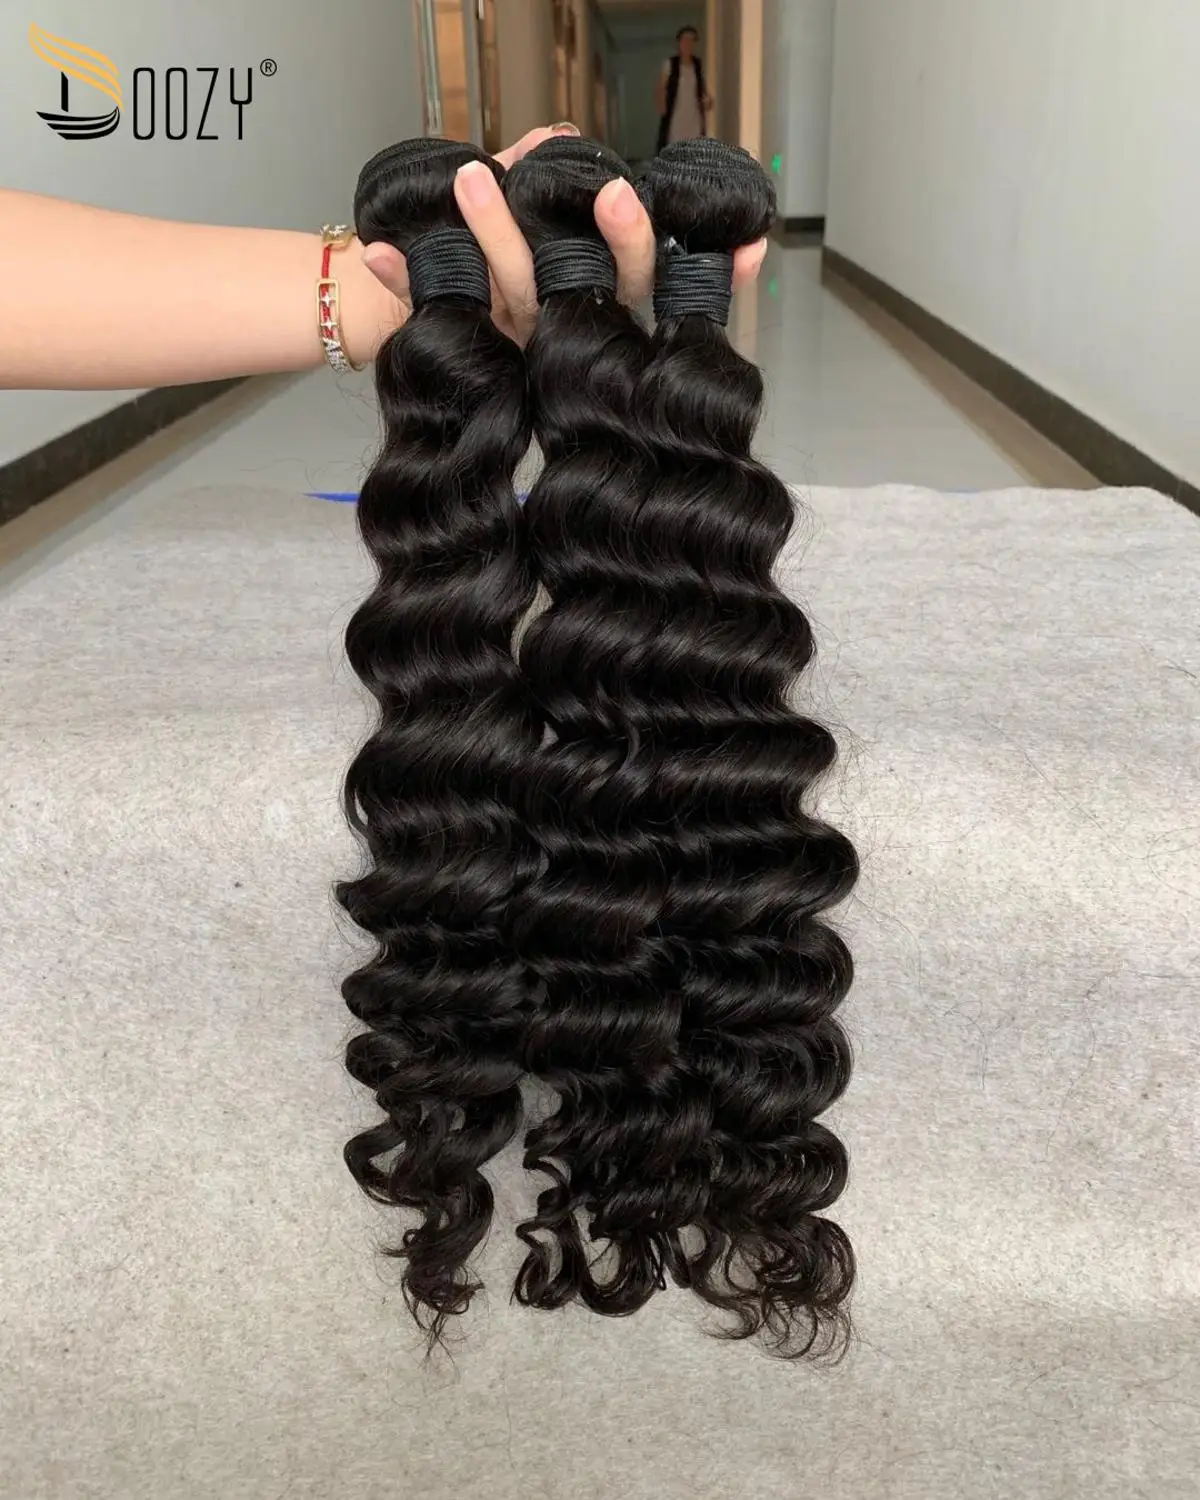 Doozy волосы бразильские волосы глубокая волна 3 пряди девственные человеческие волосы